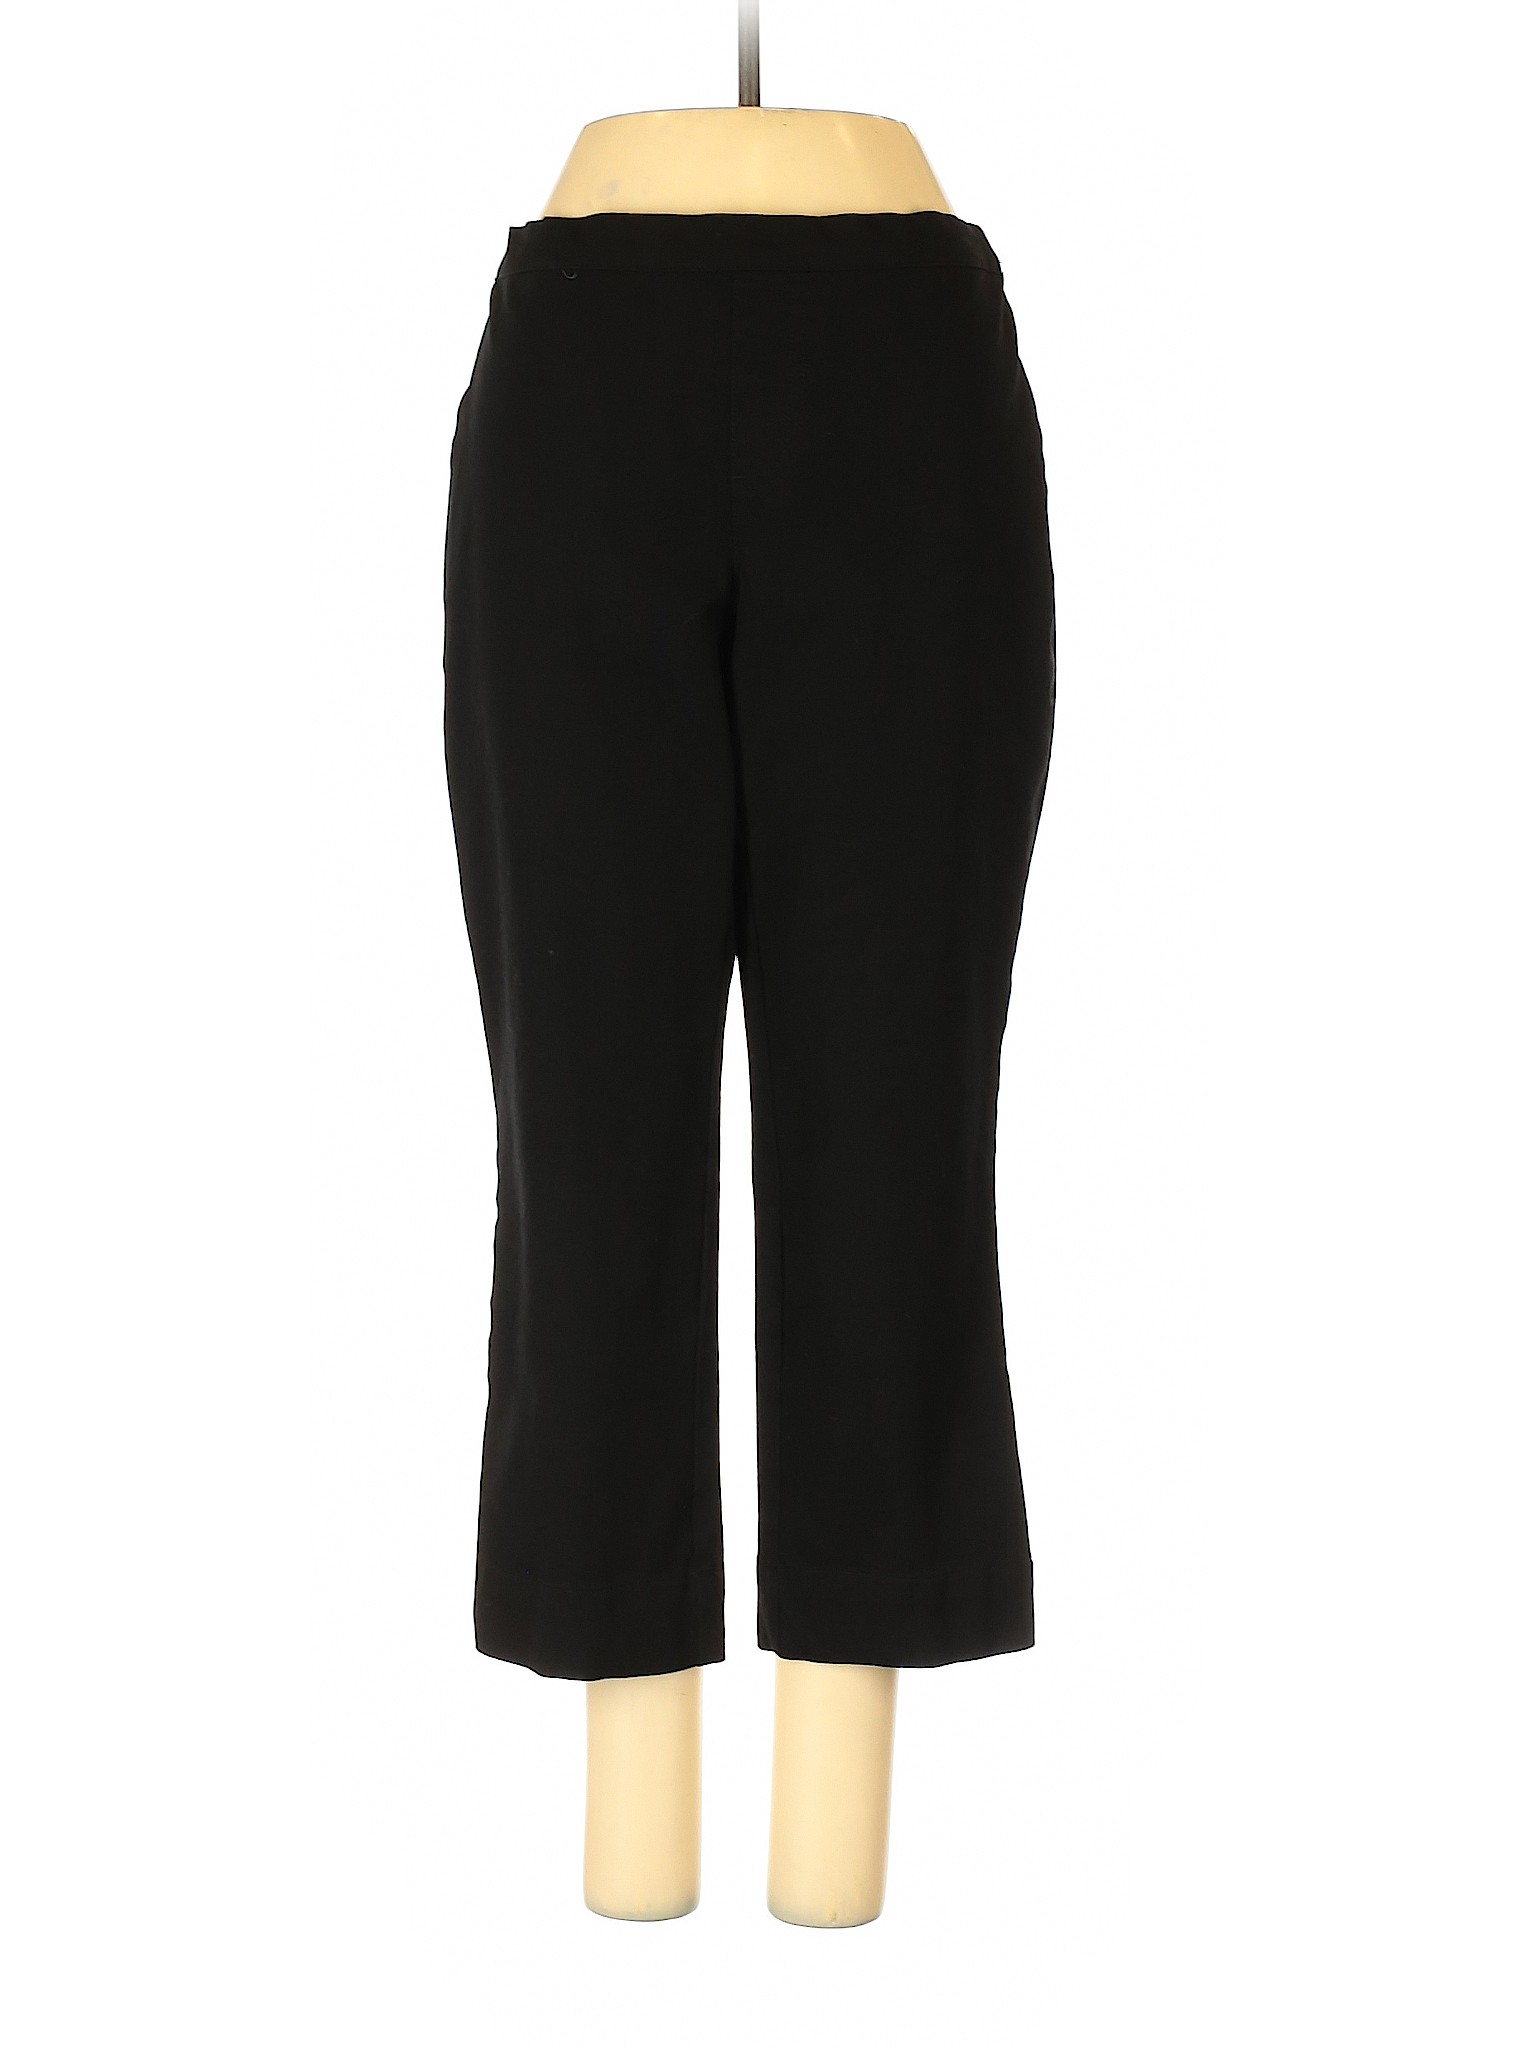 Isaac Mizrahi Women Black Dress Pants 4 | eBay